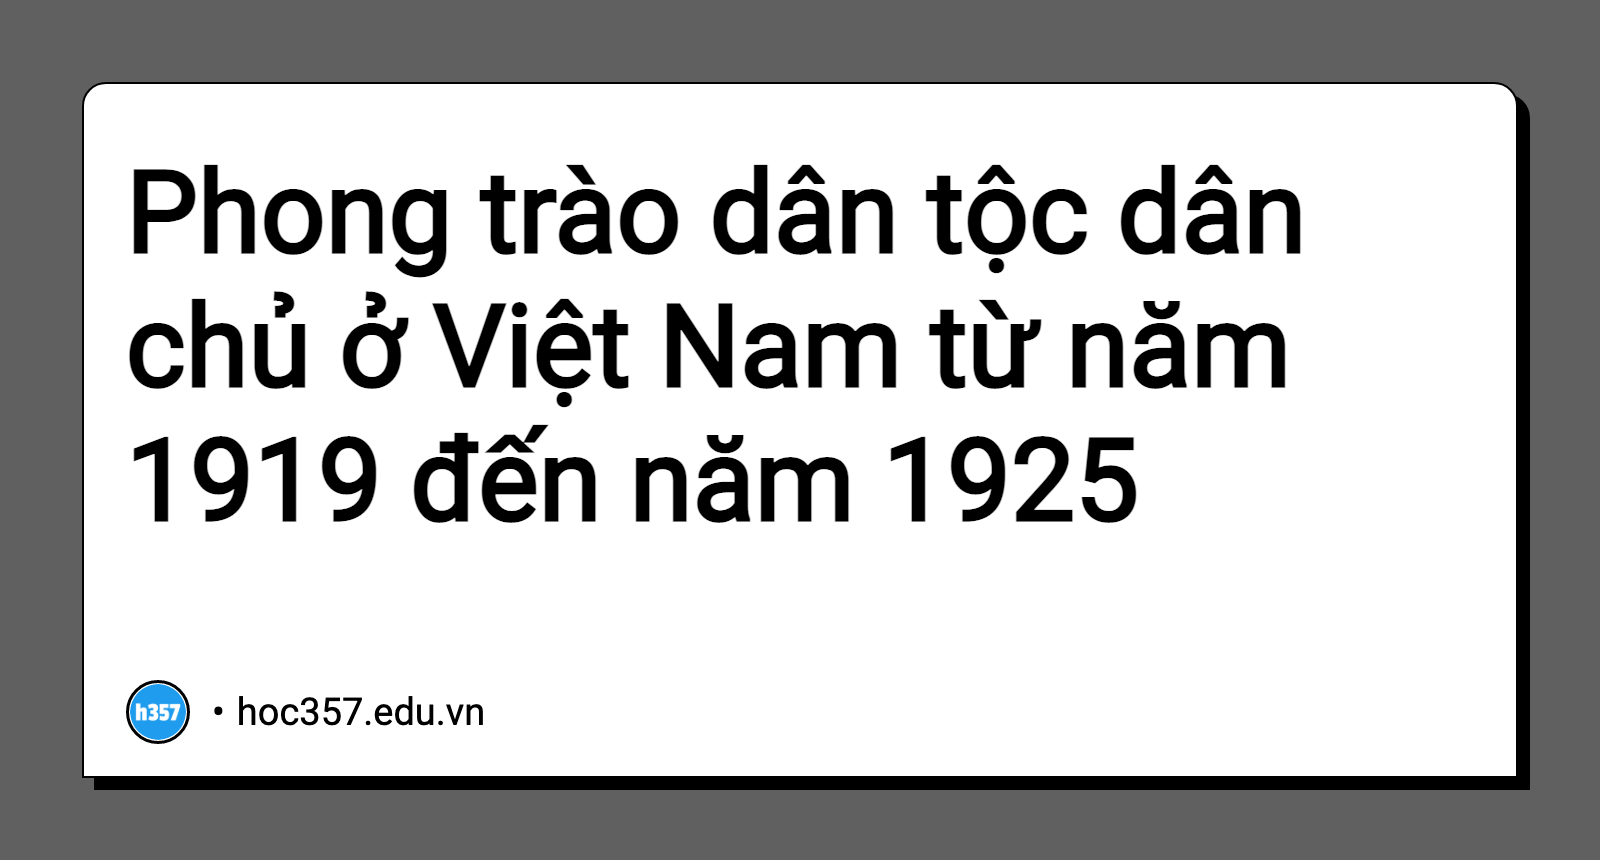 Hình minh họa Phong trào dân tộc dân chủ ở Việt Nam từ năm 1919 đến năm 1925